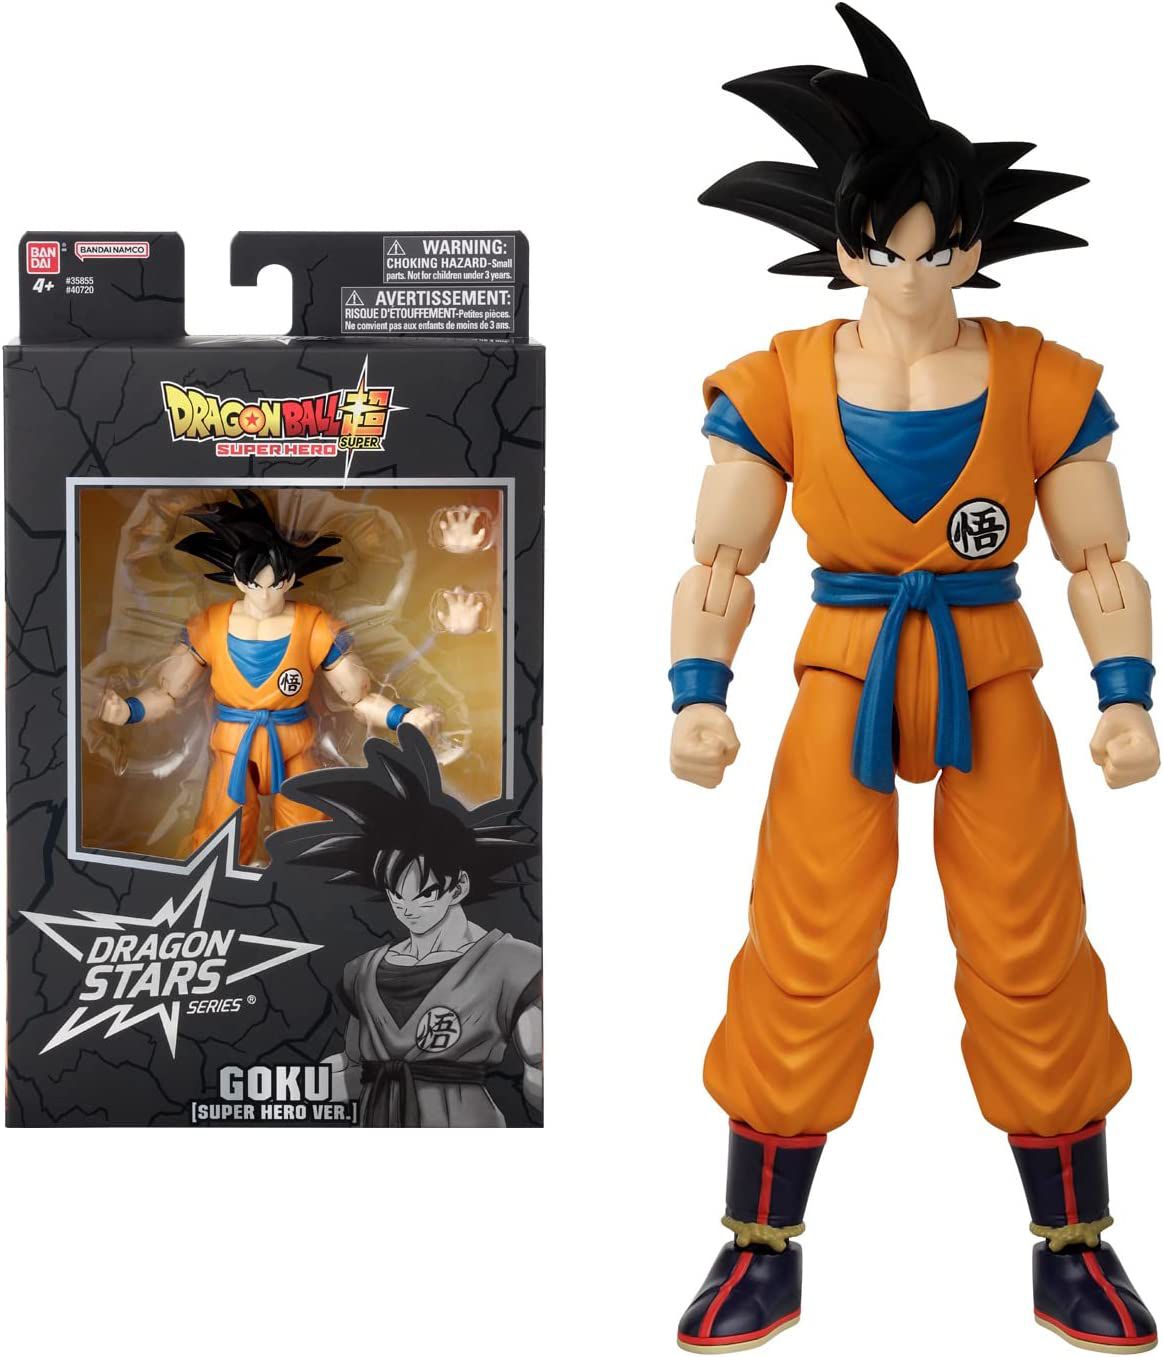 Boneco Dragon Stars Dragon Ball Super: Goku 40720 - Bandai - Os melhores  preços você encontra aqui.